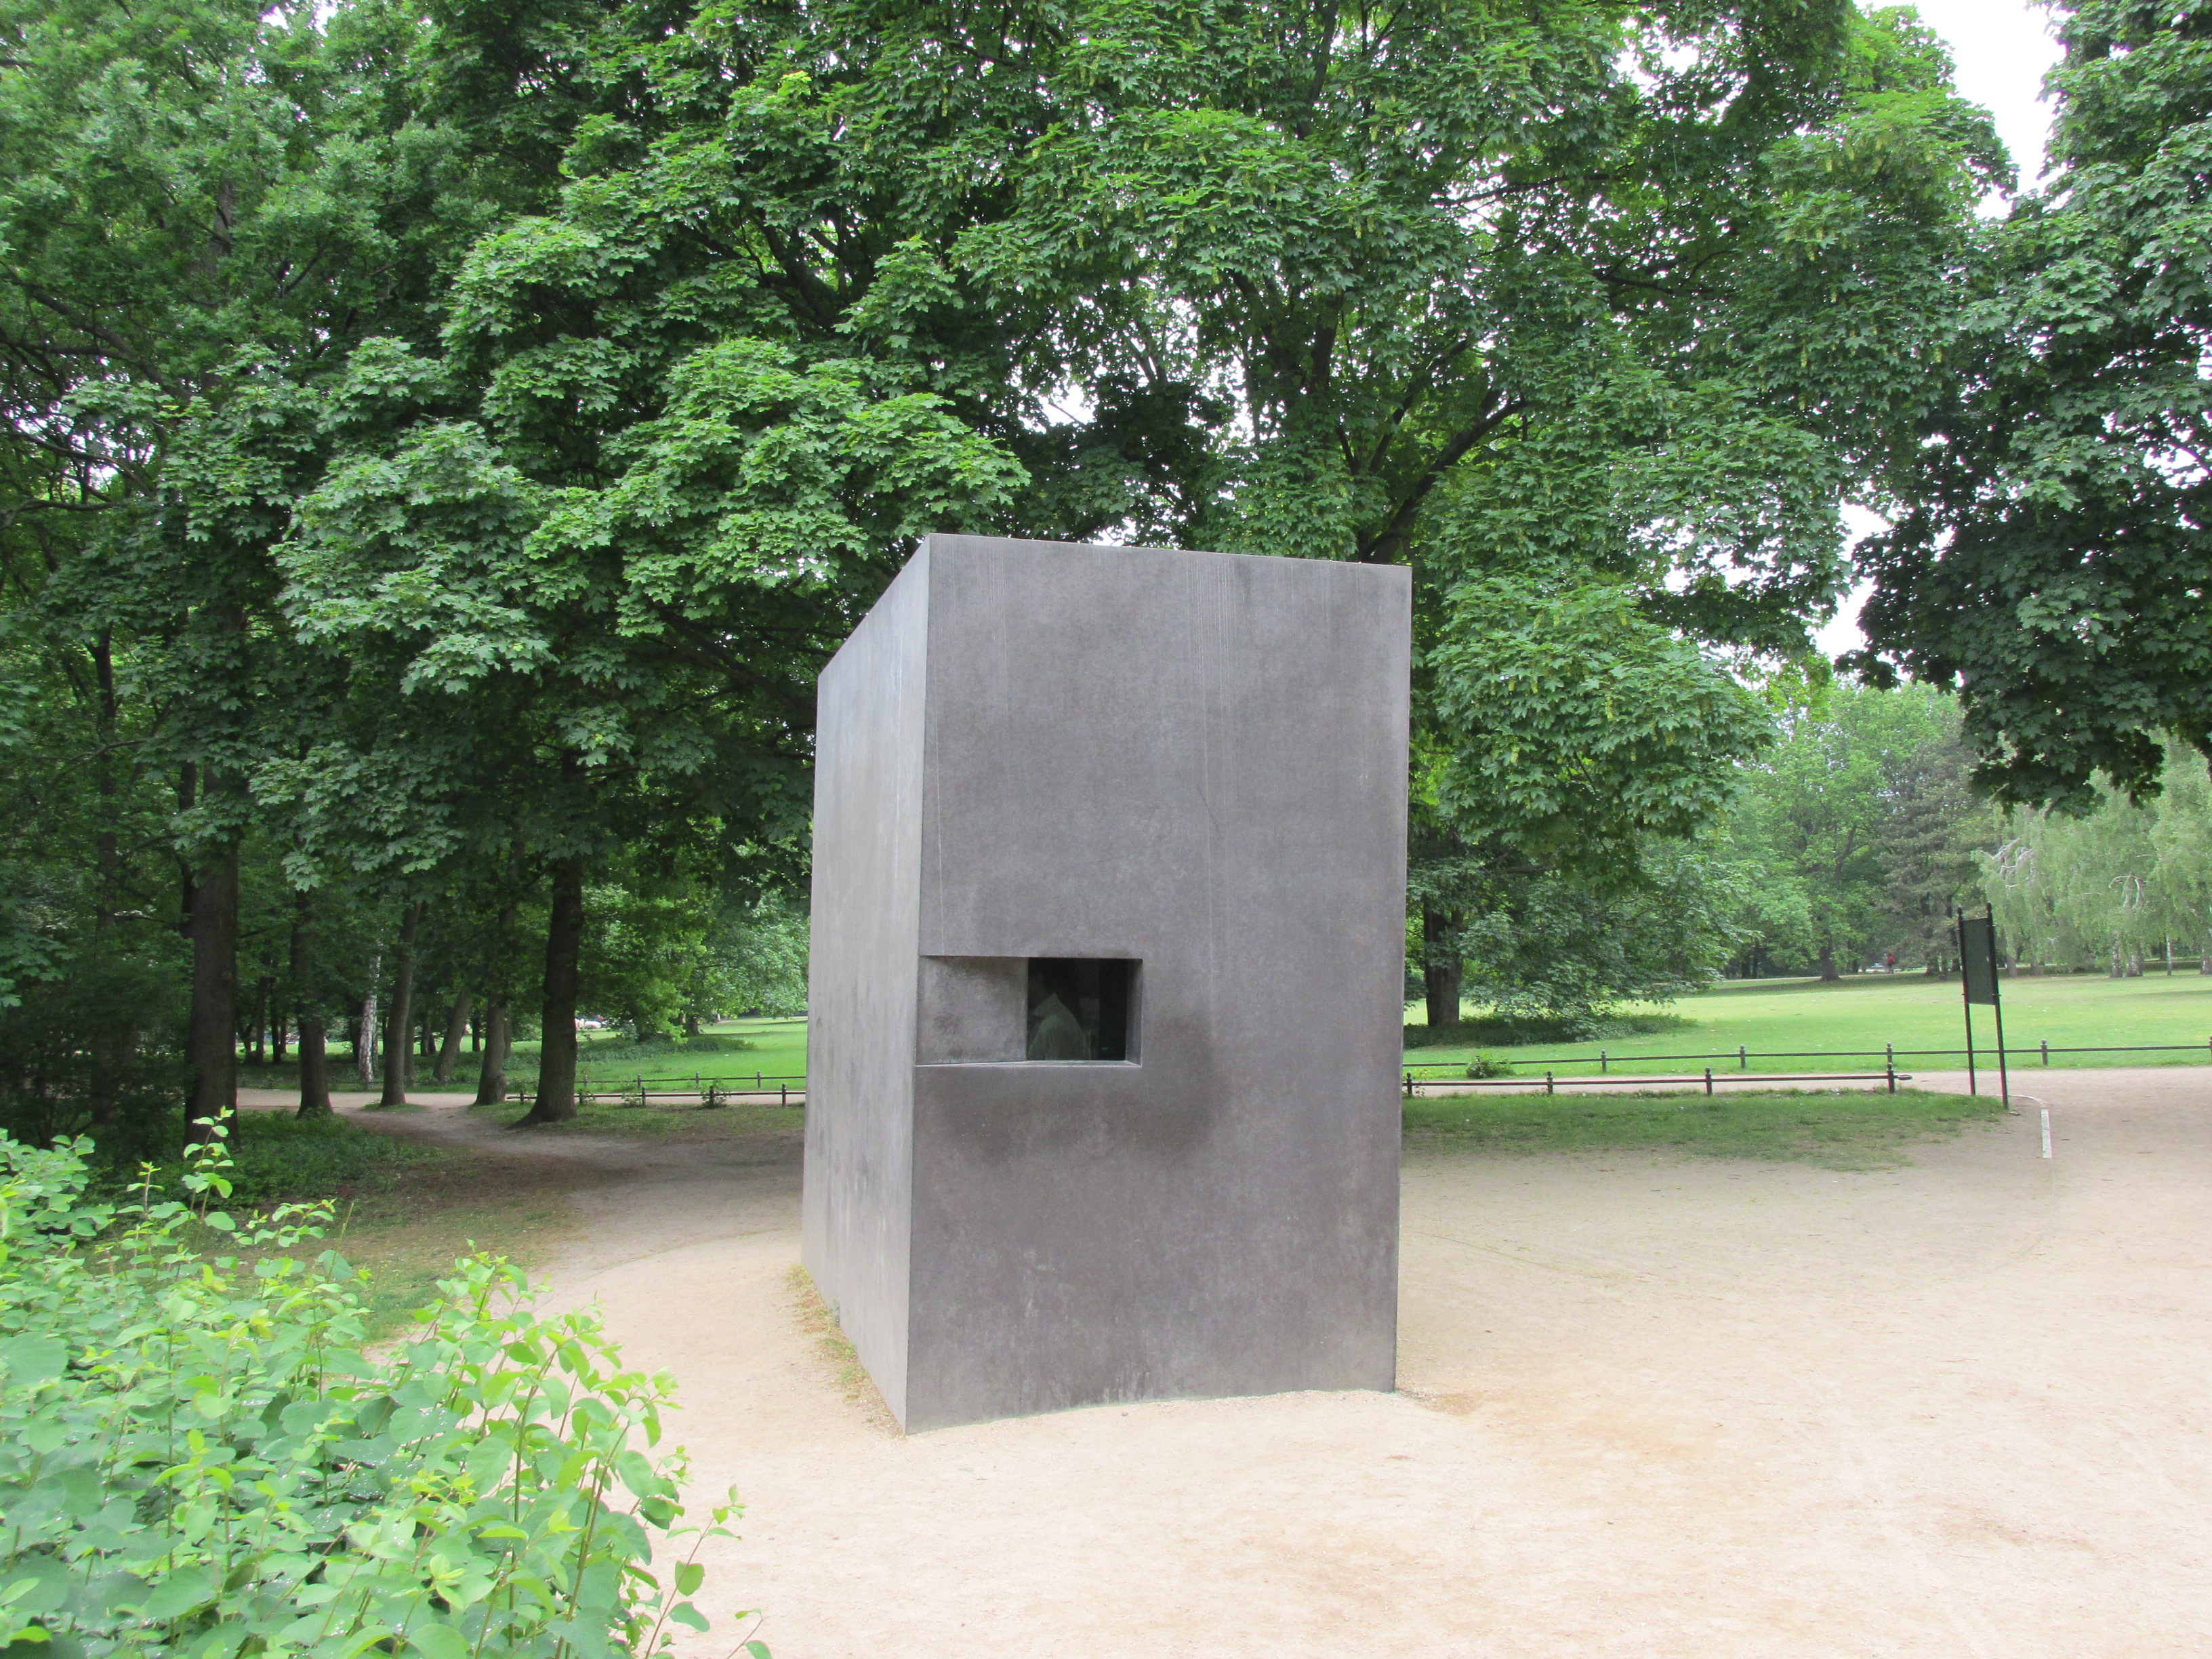 Das Foto zeigt das Denkmal für die im Nationalsozialismus verfolgten Homosexuellen in Berlin Tiergarten. Das Denkmal setzt sich aus einem Steiquader mit reckteckigem Grundriss zusammen. Auf der breiten Seite ist eine Art kleines viereckiges, dunkles Fenster eingelassen.